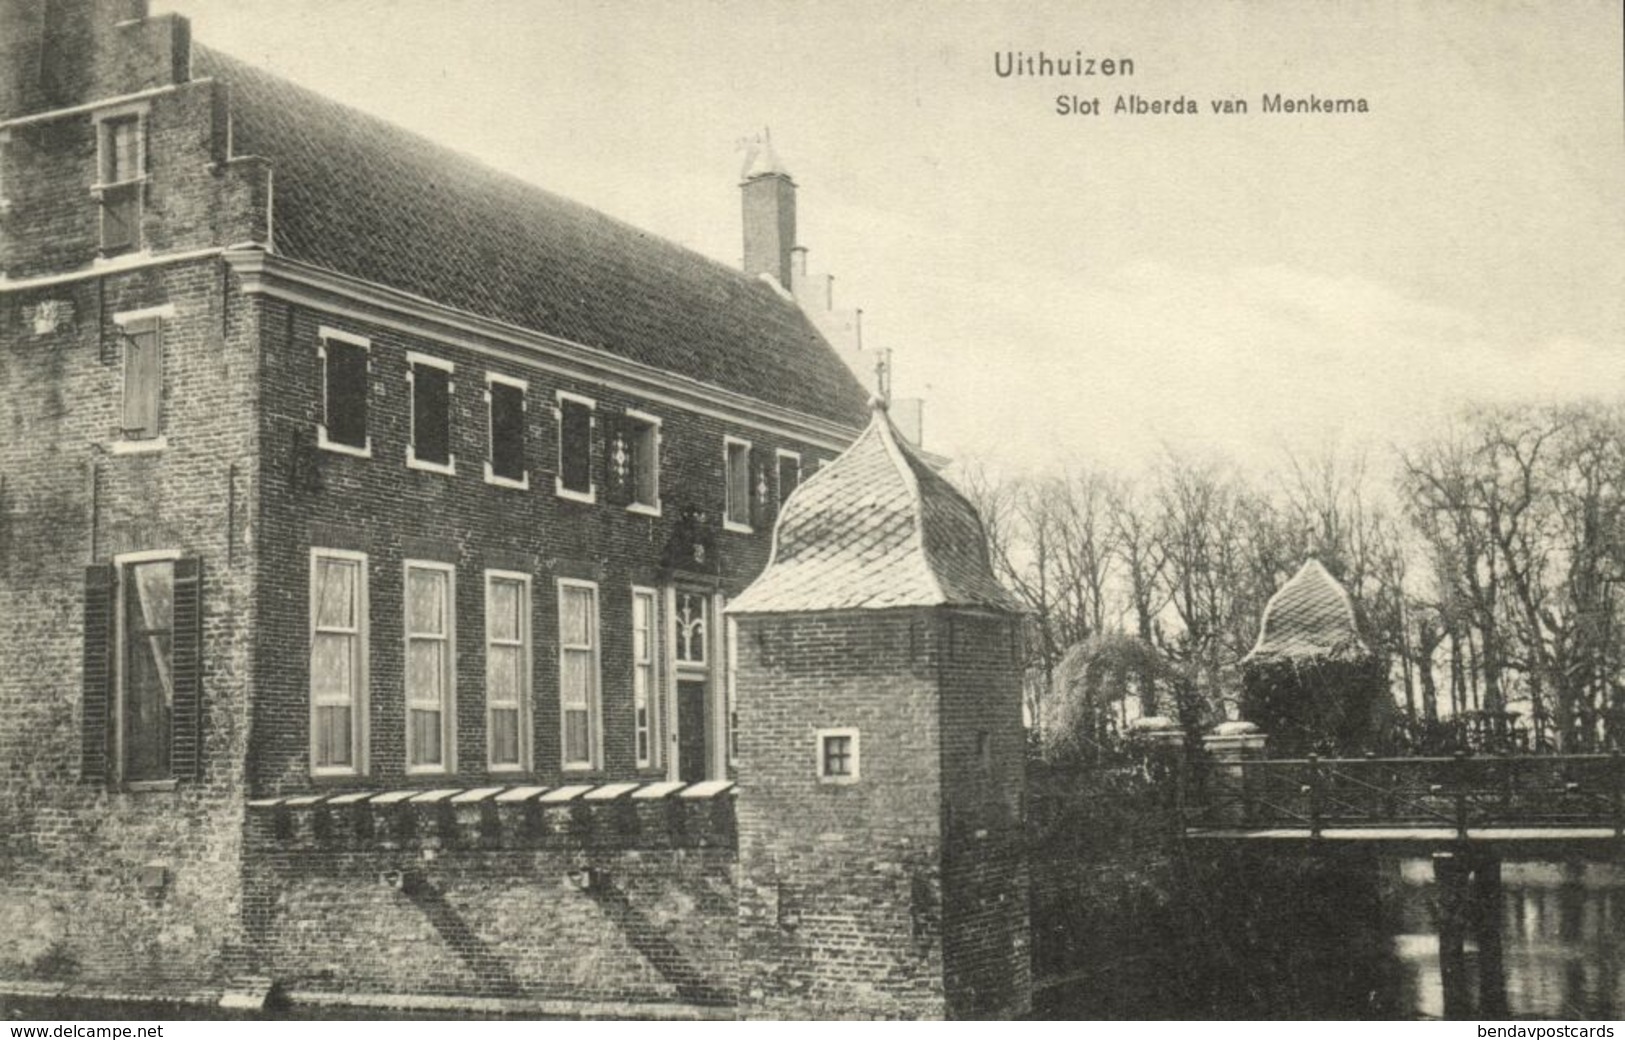 Nederland, UITHUIZEN, Slot Alberda Van Menkema (1910s) Ansichtkaart - Uithuizen